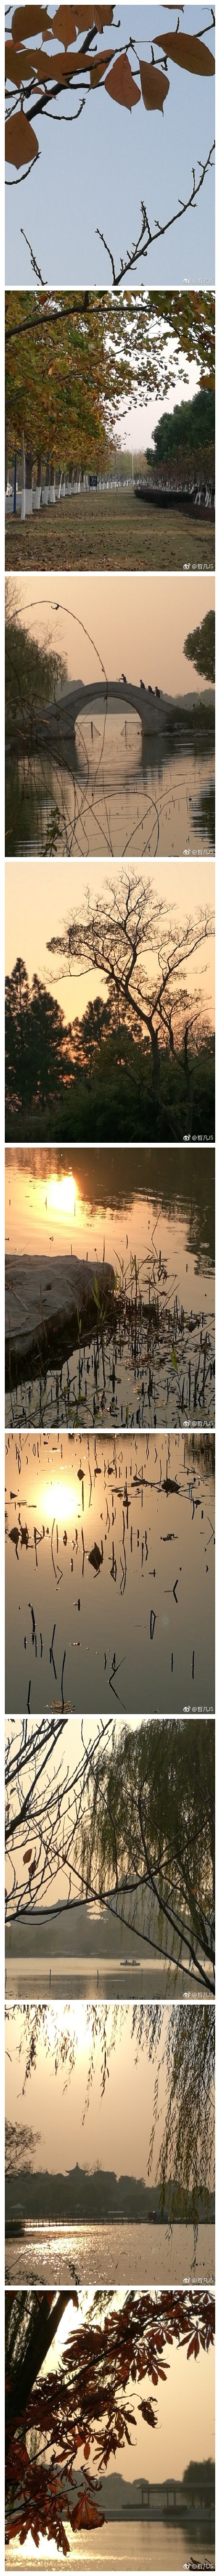 阳澄湖的秋天同大自然一样，在这个季节各种植物交替换装，争奇斗艳。夕阳下，她更散发出独特的魅力。以最好的妆容，欢迎来自四面八方的游人。 ​